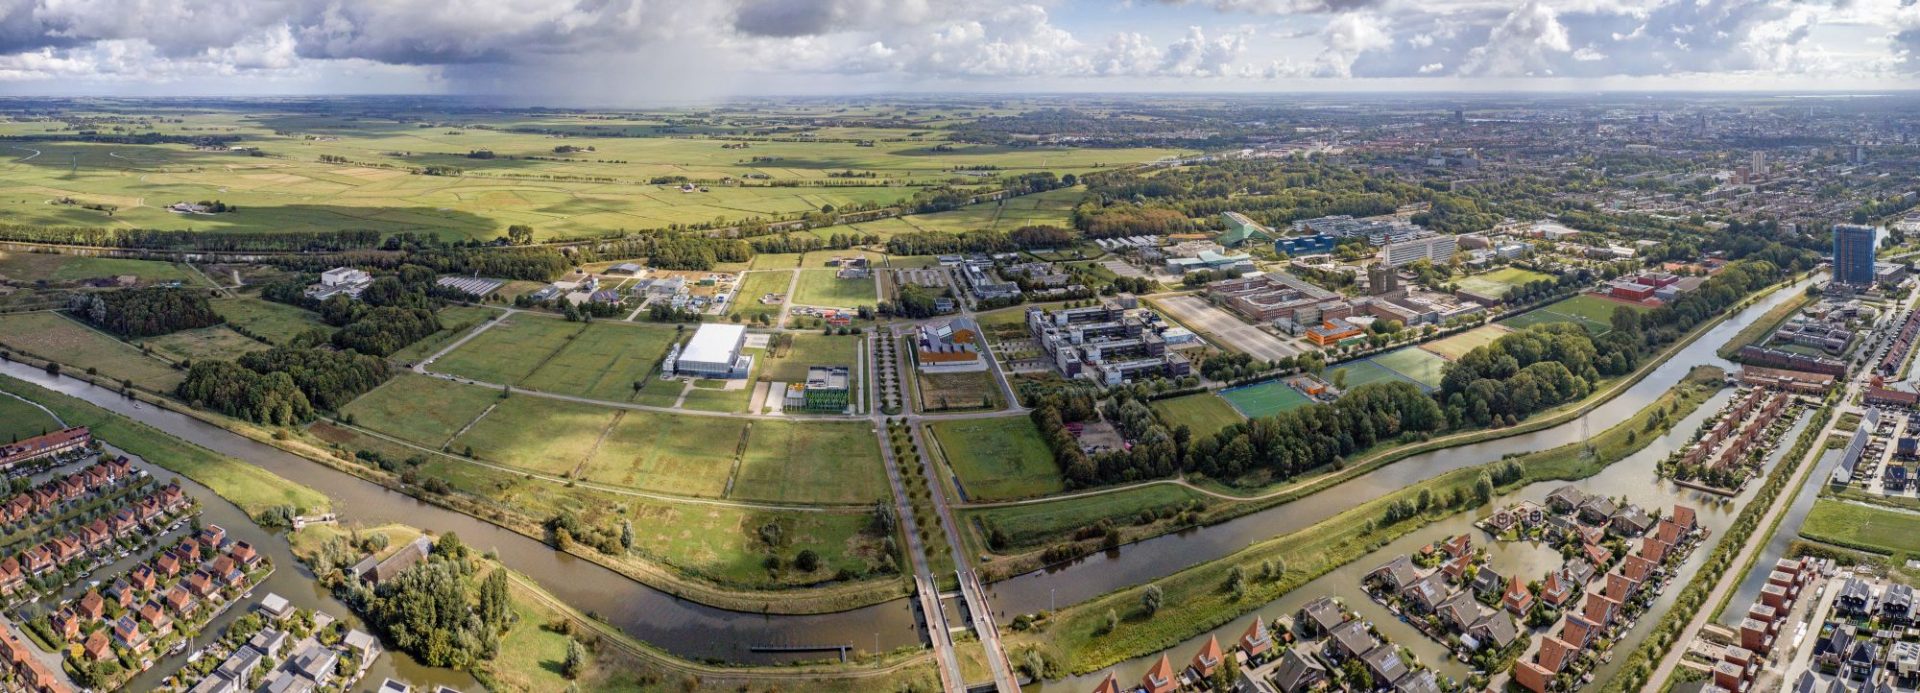 Campus Groningen zet in op verbinding met de regio